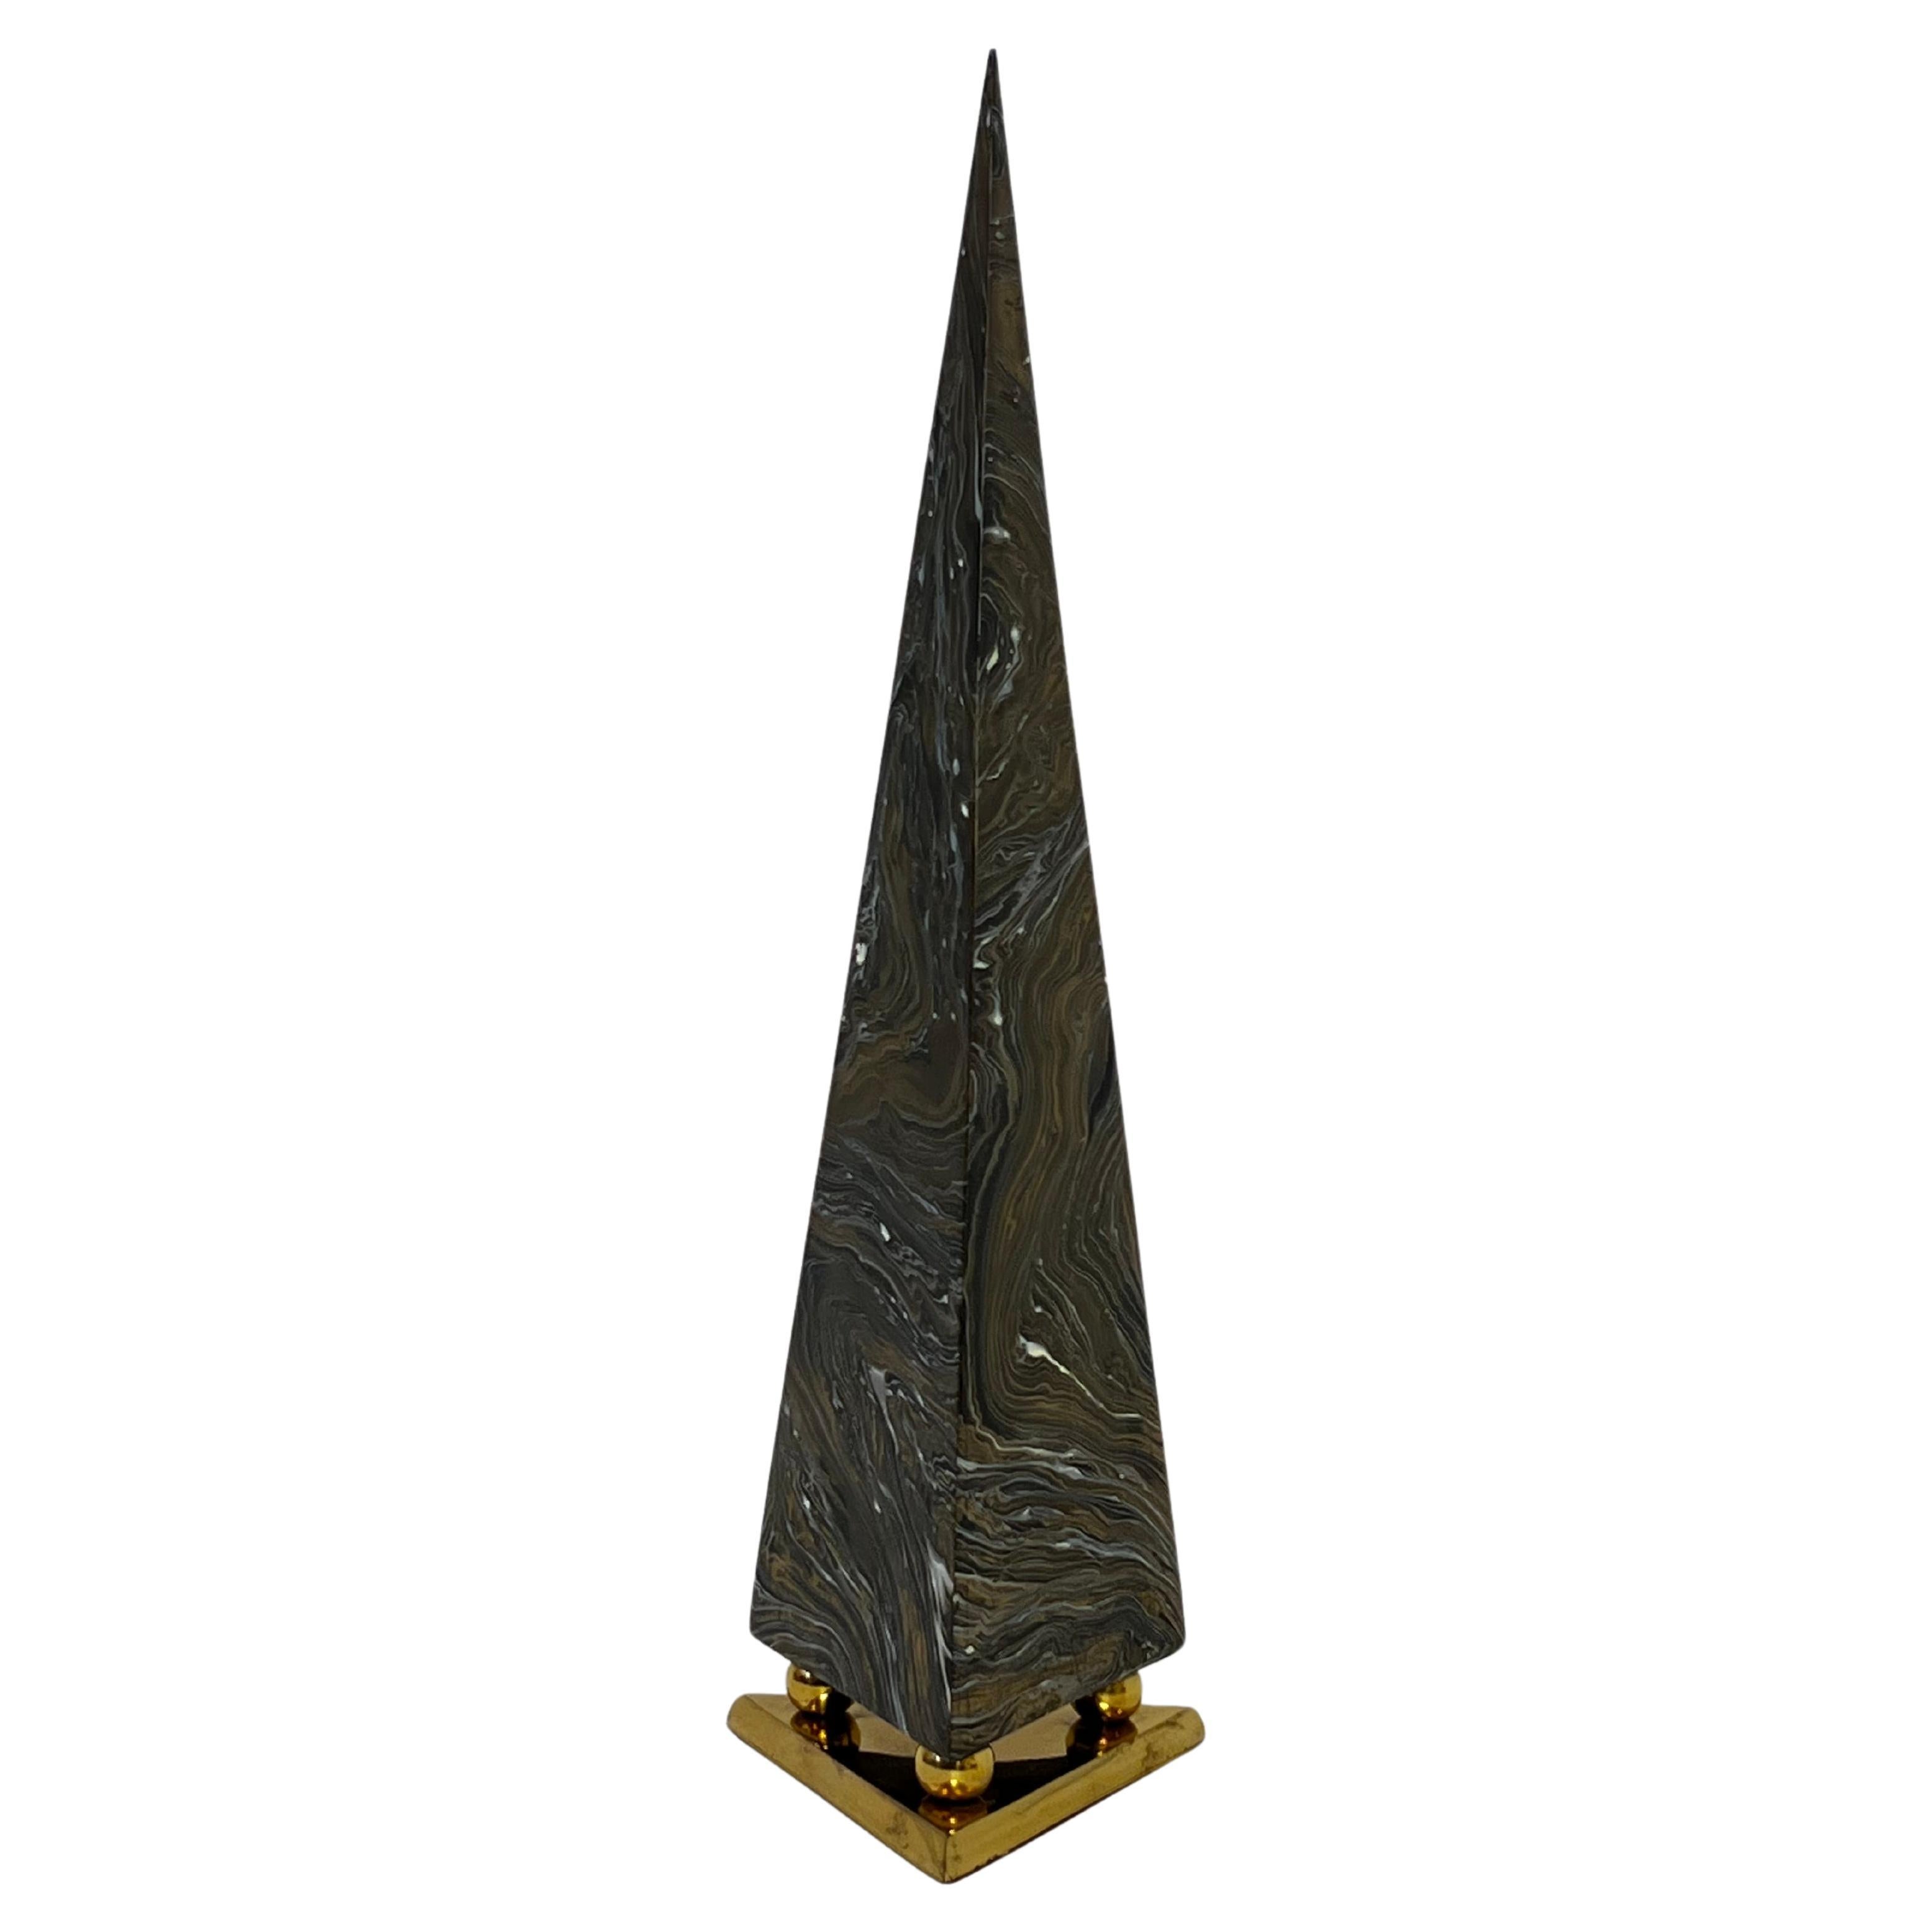 Obélisque pyramidal en laiton marbré des années 1970  attribué à Maitland Smith. 

En état vintage d'origine, montre une usure mineure cohérente avec l'âge (voir les photos de détail). 